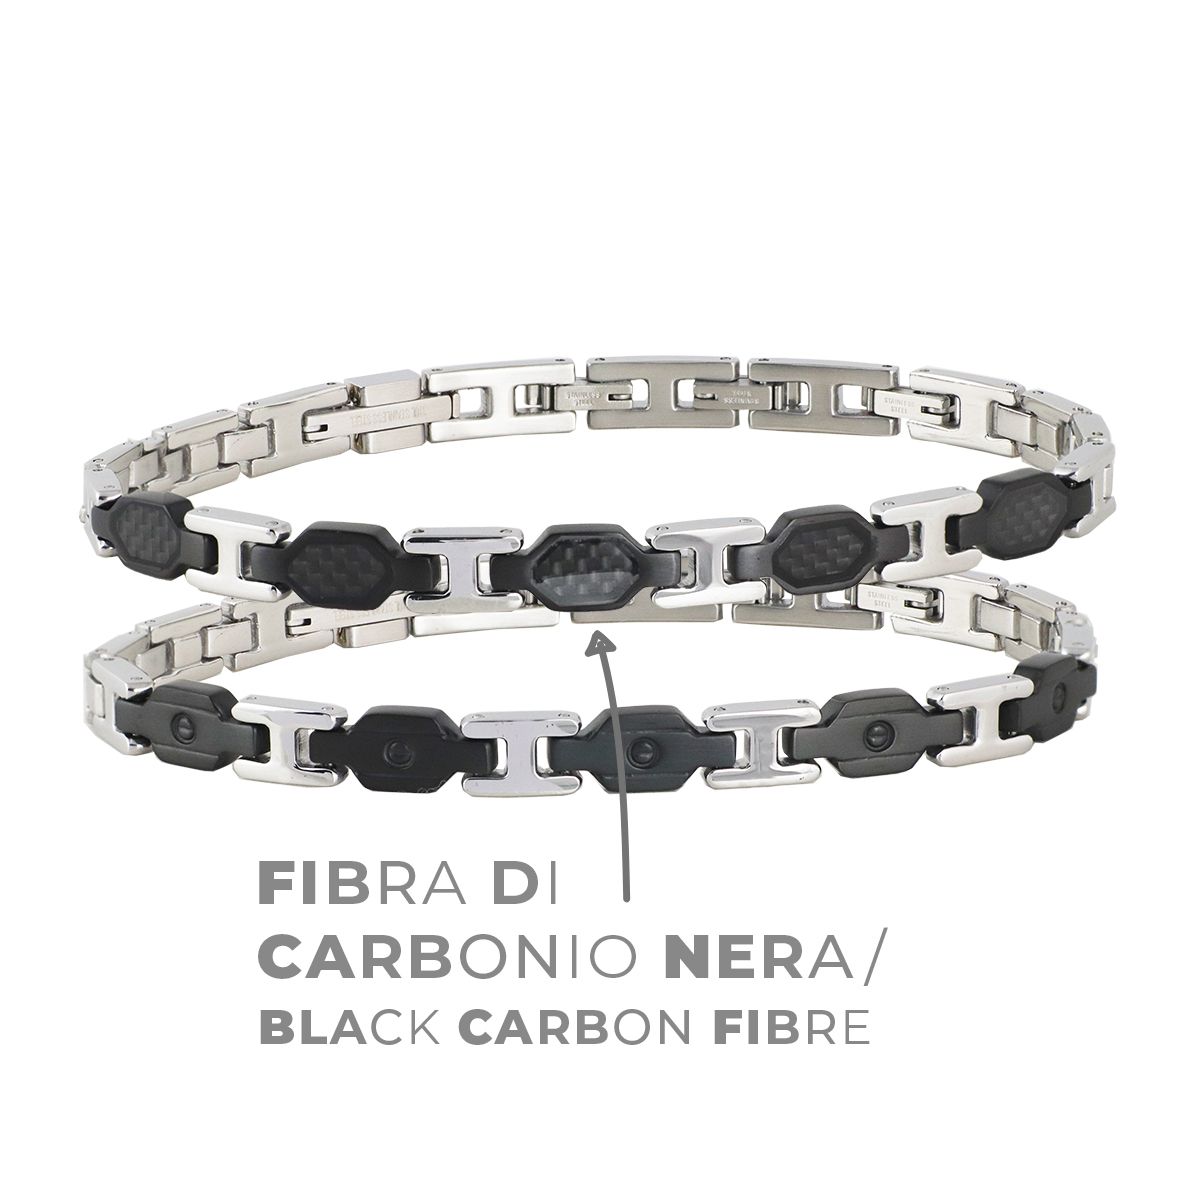 Fibra di carbonio nera - Black carbon fibre